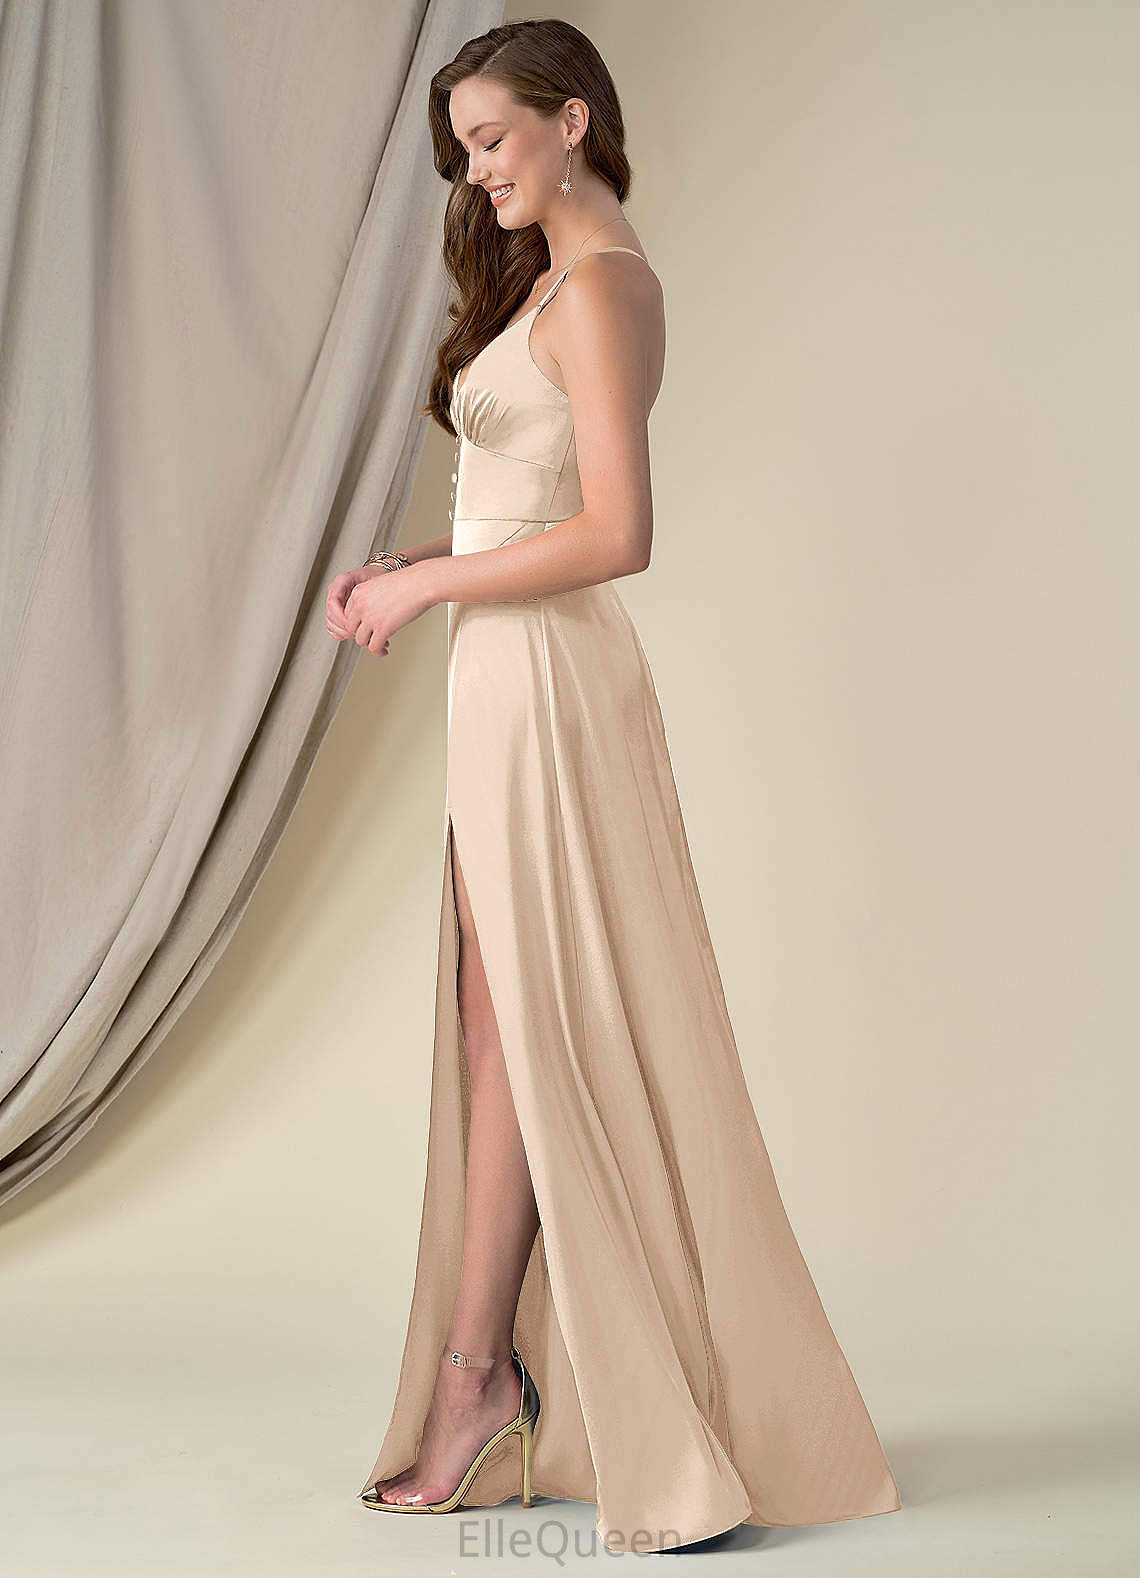 Aubrey Knee Length Sleeveless One Shoulder A-Line/Princess Natural Waist Bridesmaid Dresses